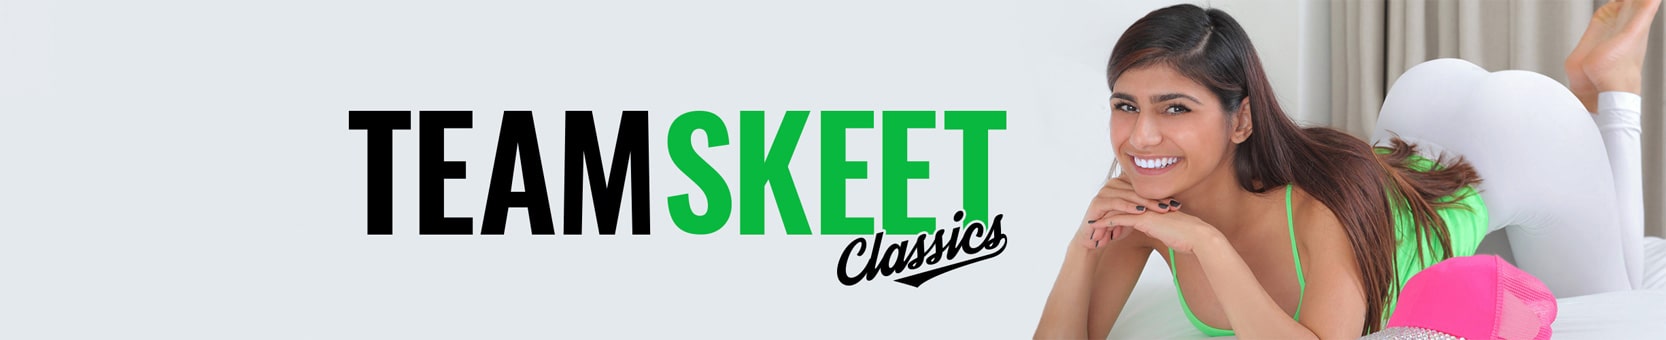 Team Skeet Classics бесплатные видео